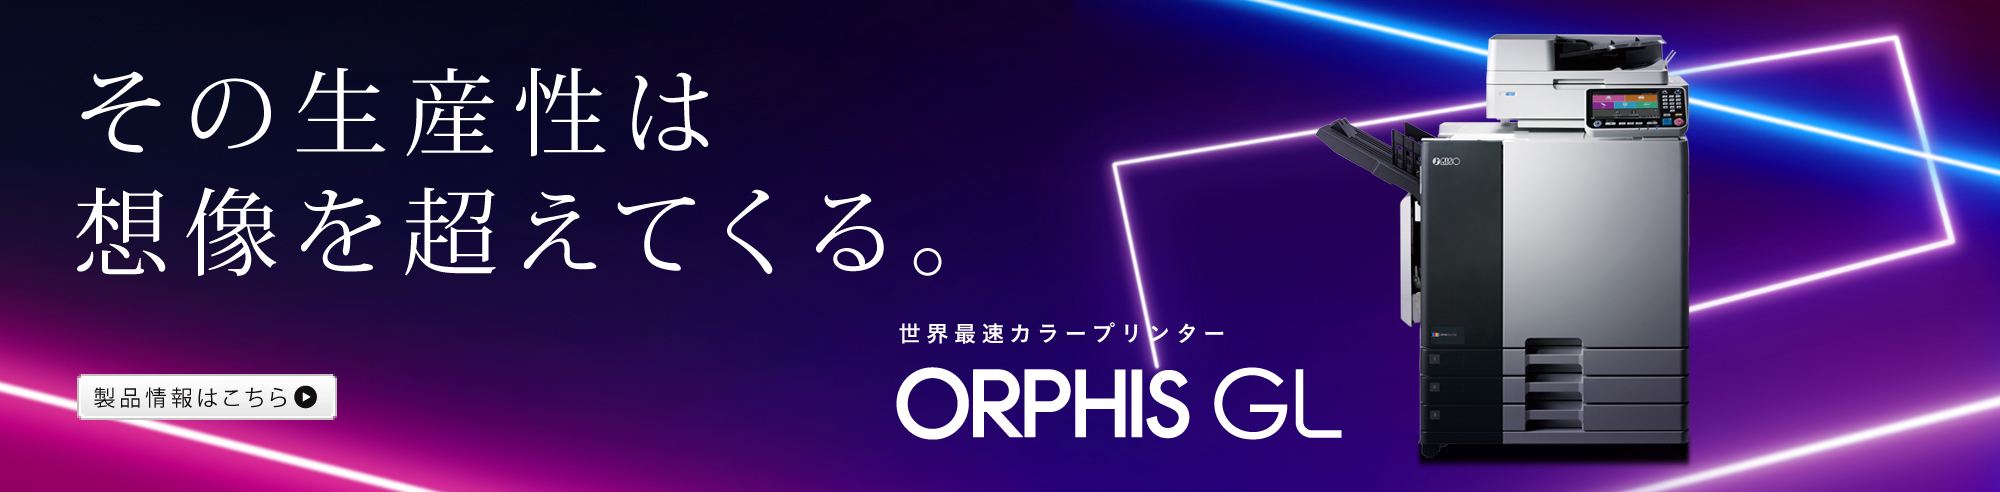 その生産性は想像を超えて来る 世界最速カラープリンター ORPHIS GL 製品情報はこちら